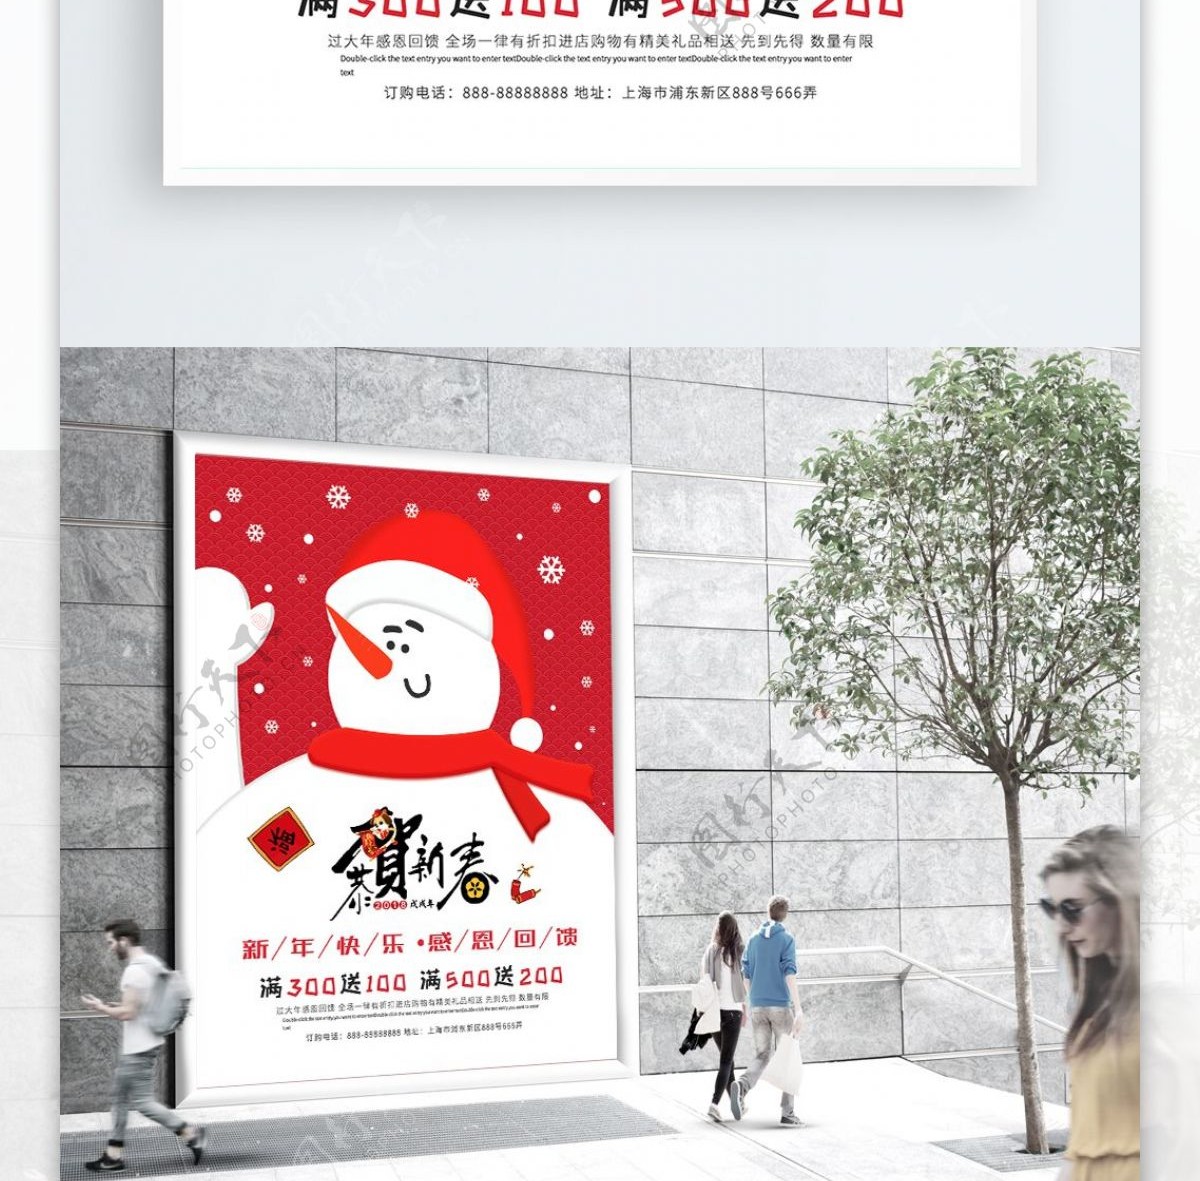 新春促销小清新卡通简约中国风雪人宣传海报